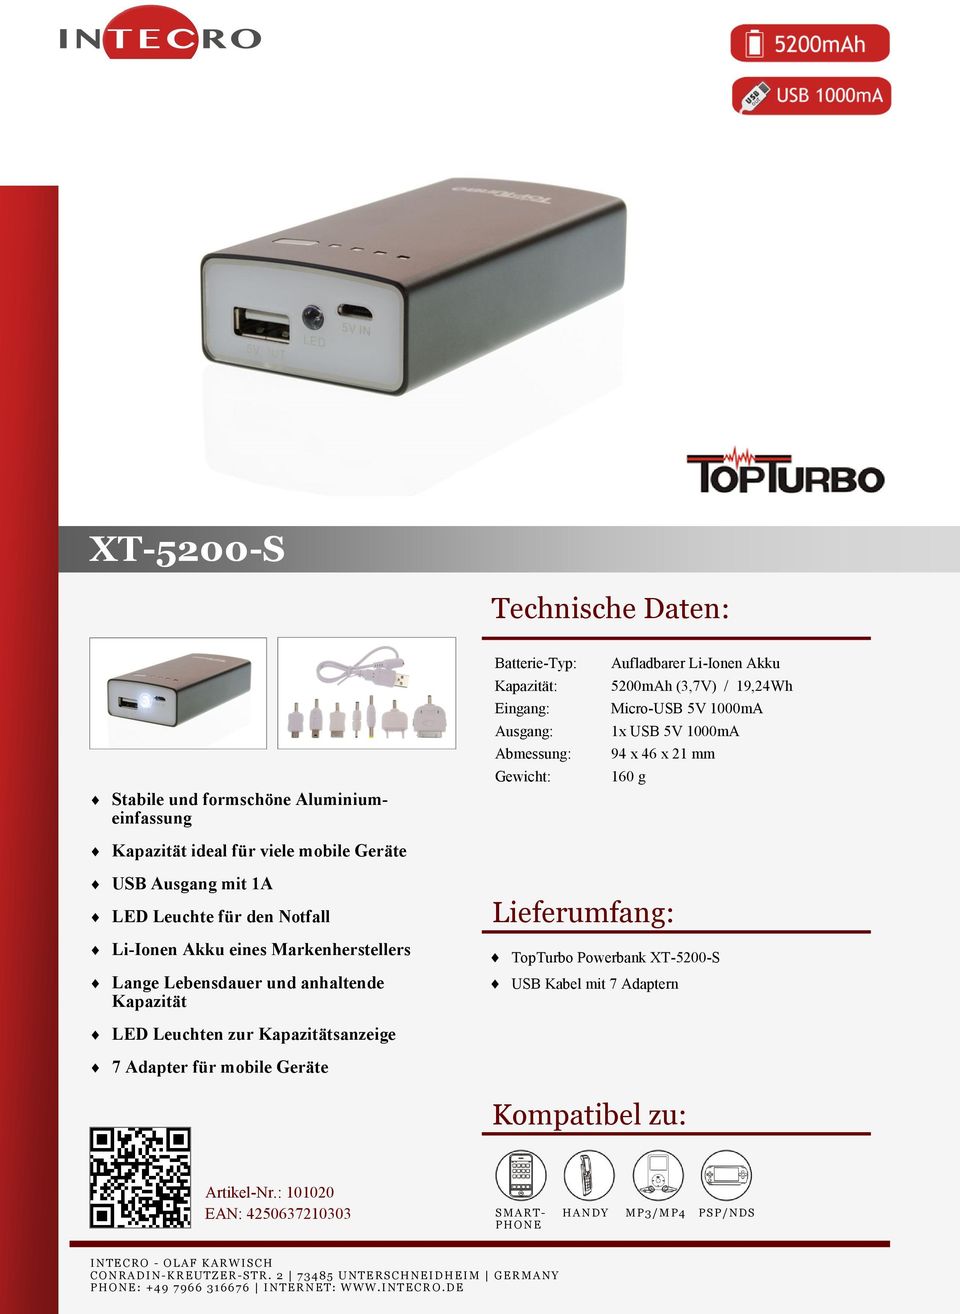 Notfall Li-Ionen Akku eines Markenherstellers Lange Lebensdauer und anhaltende Kapazität TopTurbo Powerbank XT-5200-S USB